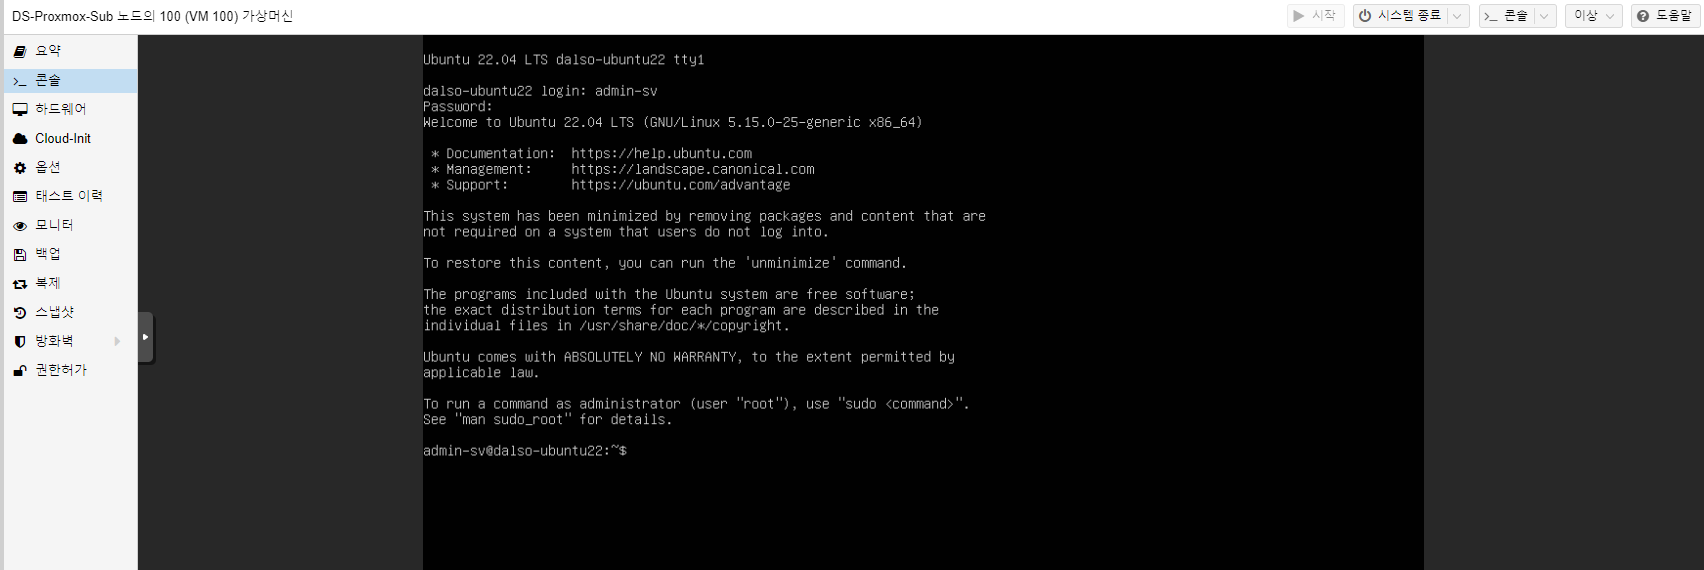 Proxmox에 Ubuntu 22.04 LTS 서버 설치하기.